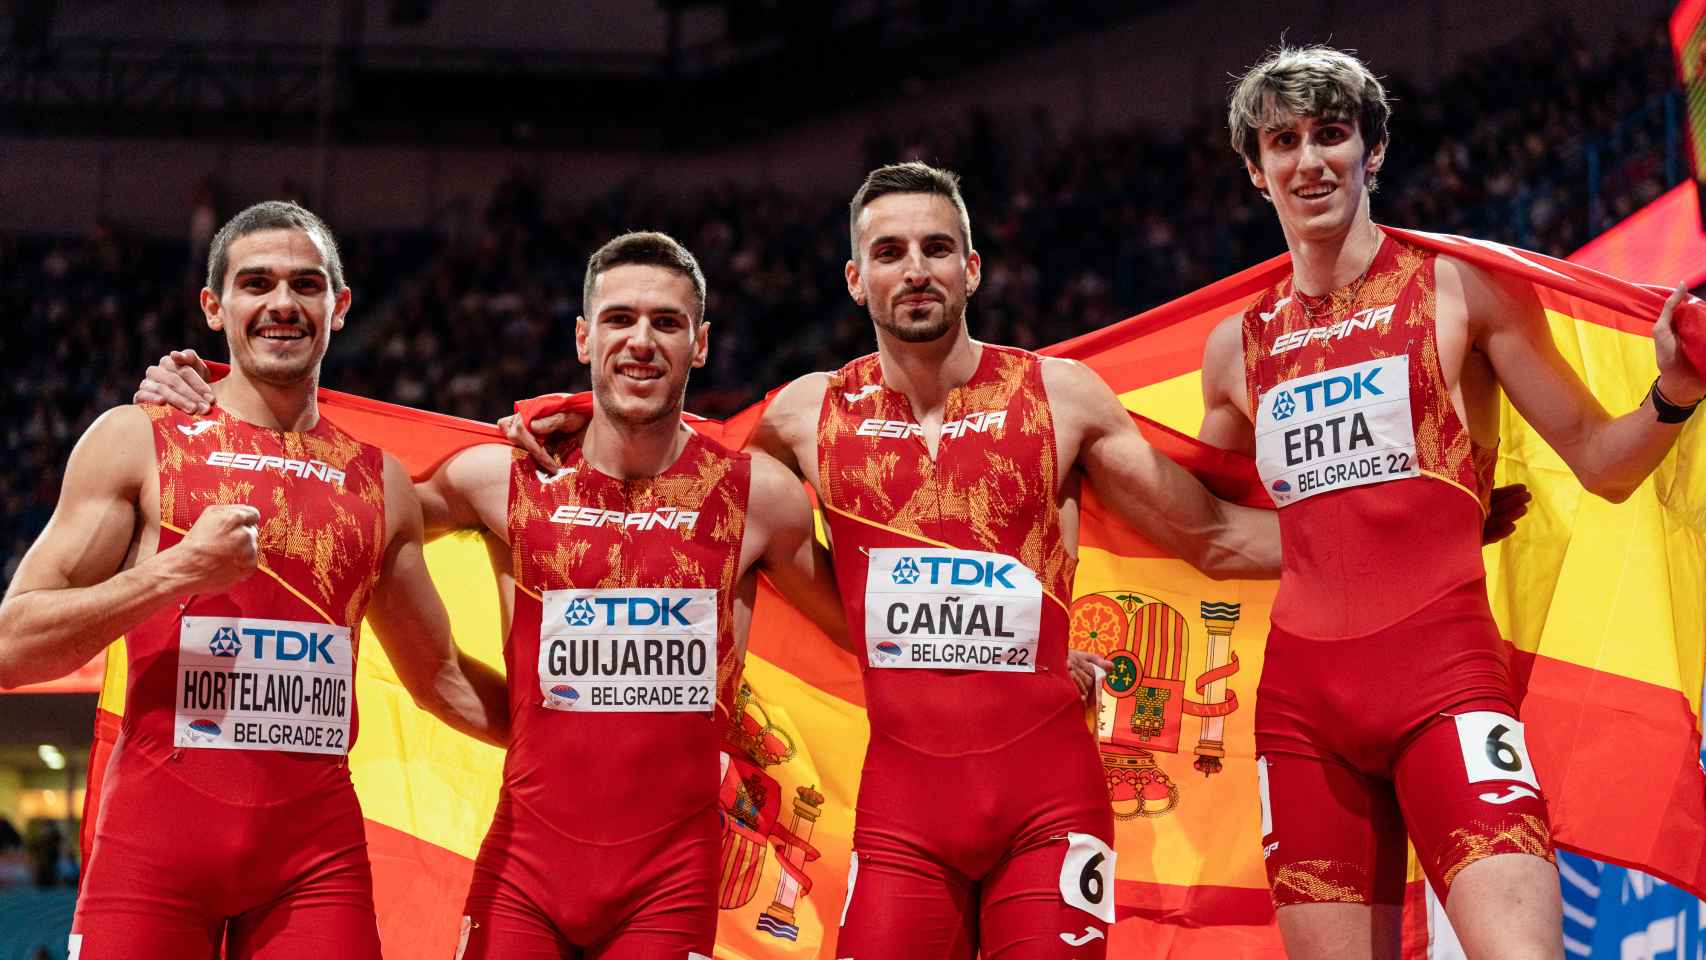 Bruno Hortelano, Manuel Guijarro, Iñaki Canal y Bernat Erta tras conseguir la plata en el Mundial de Atletismo de pista cubierta de Belgrado 2022.